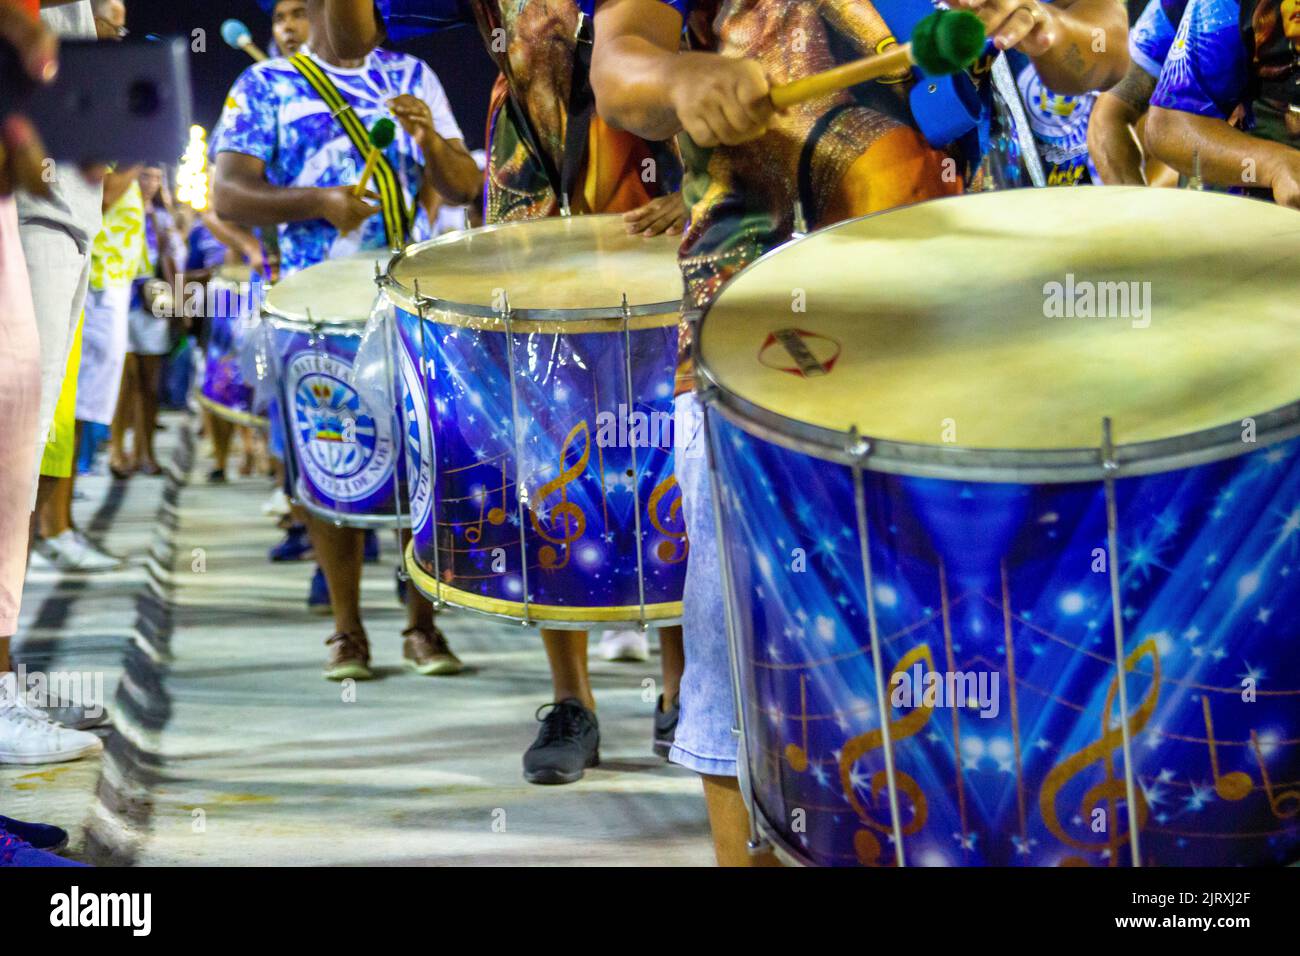 Componenti della Scuola di Vila Isabel, Marques de Sapucai, Rio de Janeiro, Brasile - 10 febbraio 2019: Membro della scuola di samba Vila Isabel durante Foto Stock